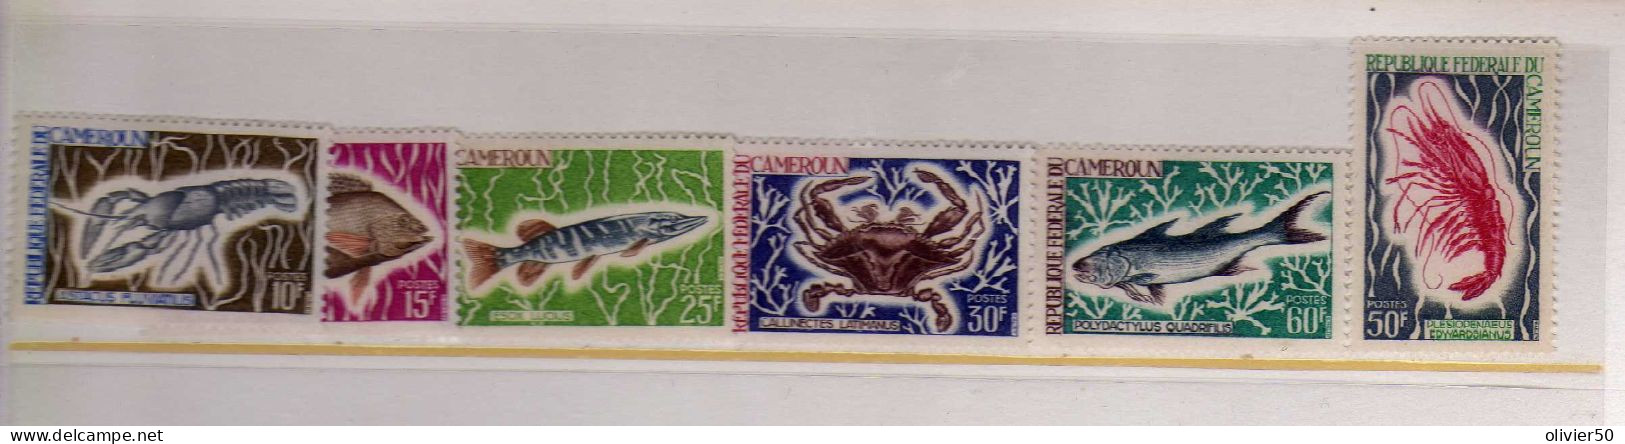 Cameroun - Crustaces - Poissons -  Neufs** - MNH - Cameroun (1960-...)